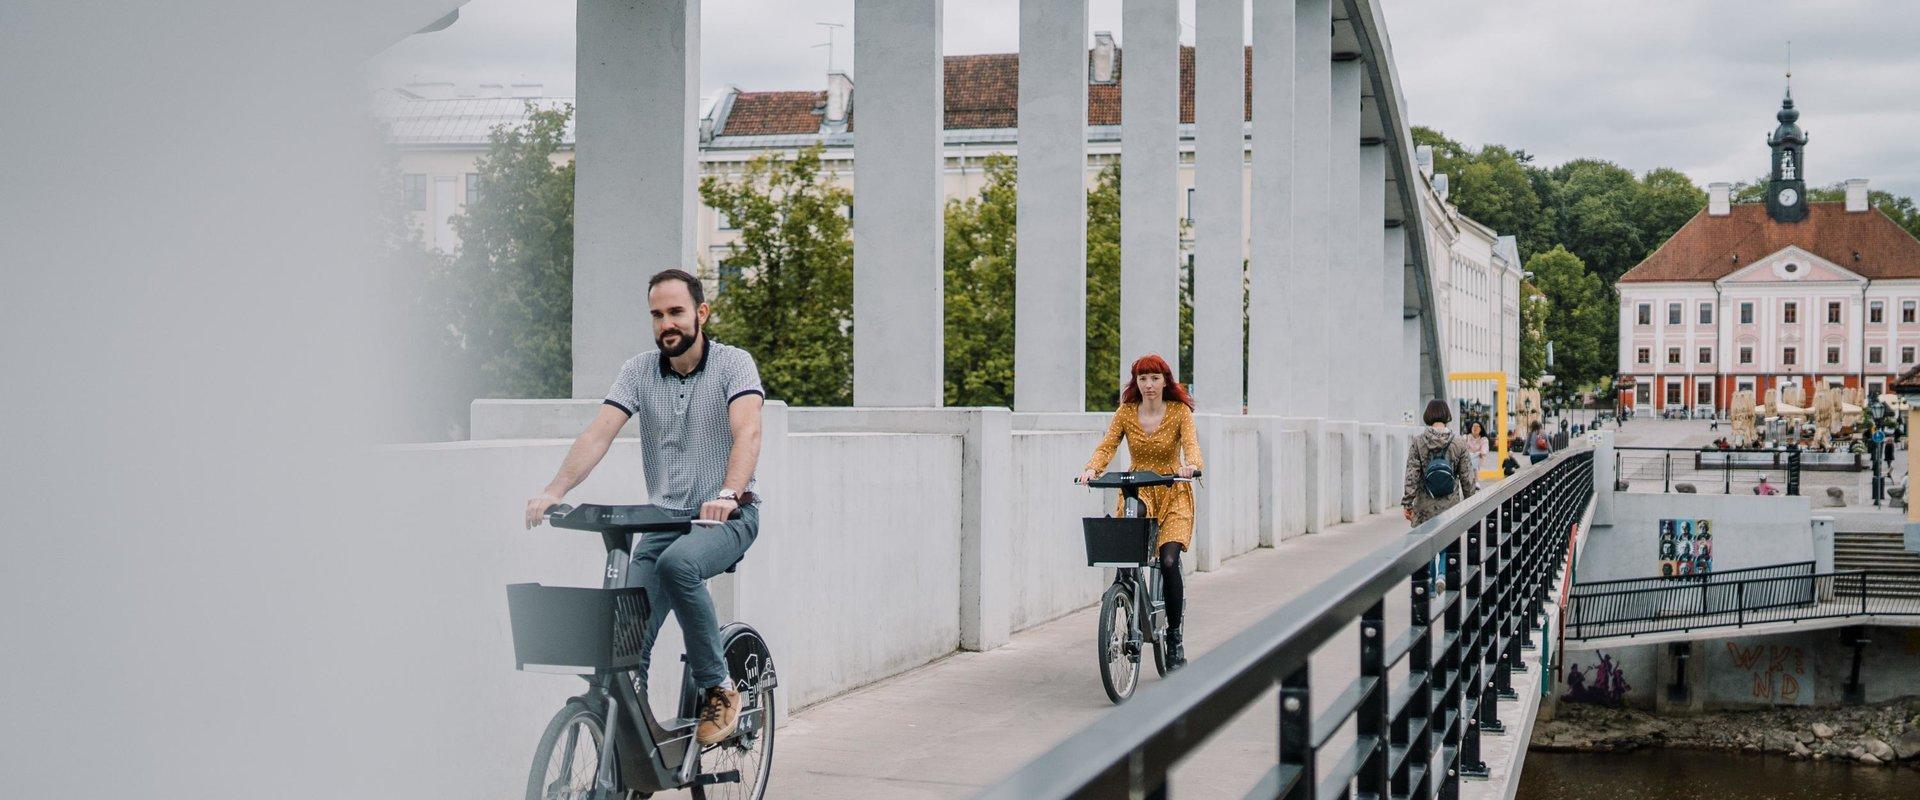 Tartu ist eine kompakte und umweltfreundliche Stadt, die Sie am besten erfahren und erkunden können, indem Sie zu Fuß gehen oder mit dem Fahrrad fahre